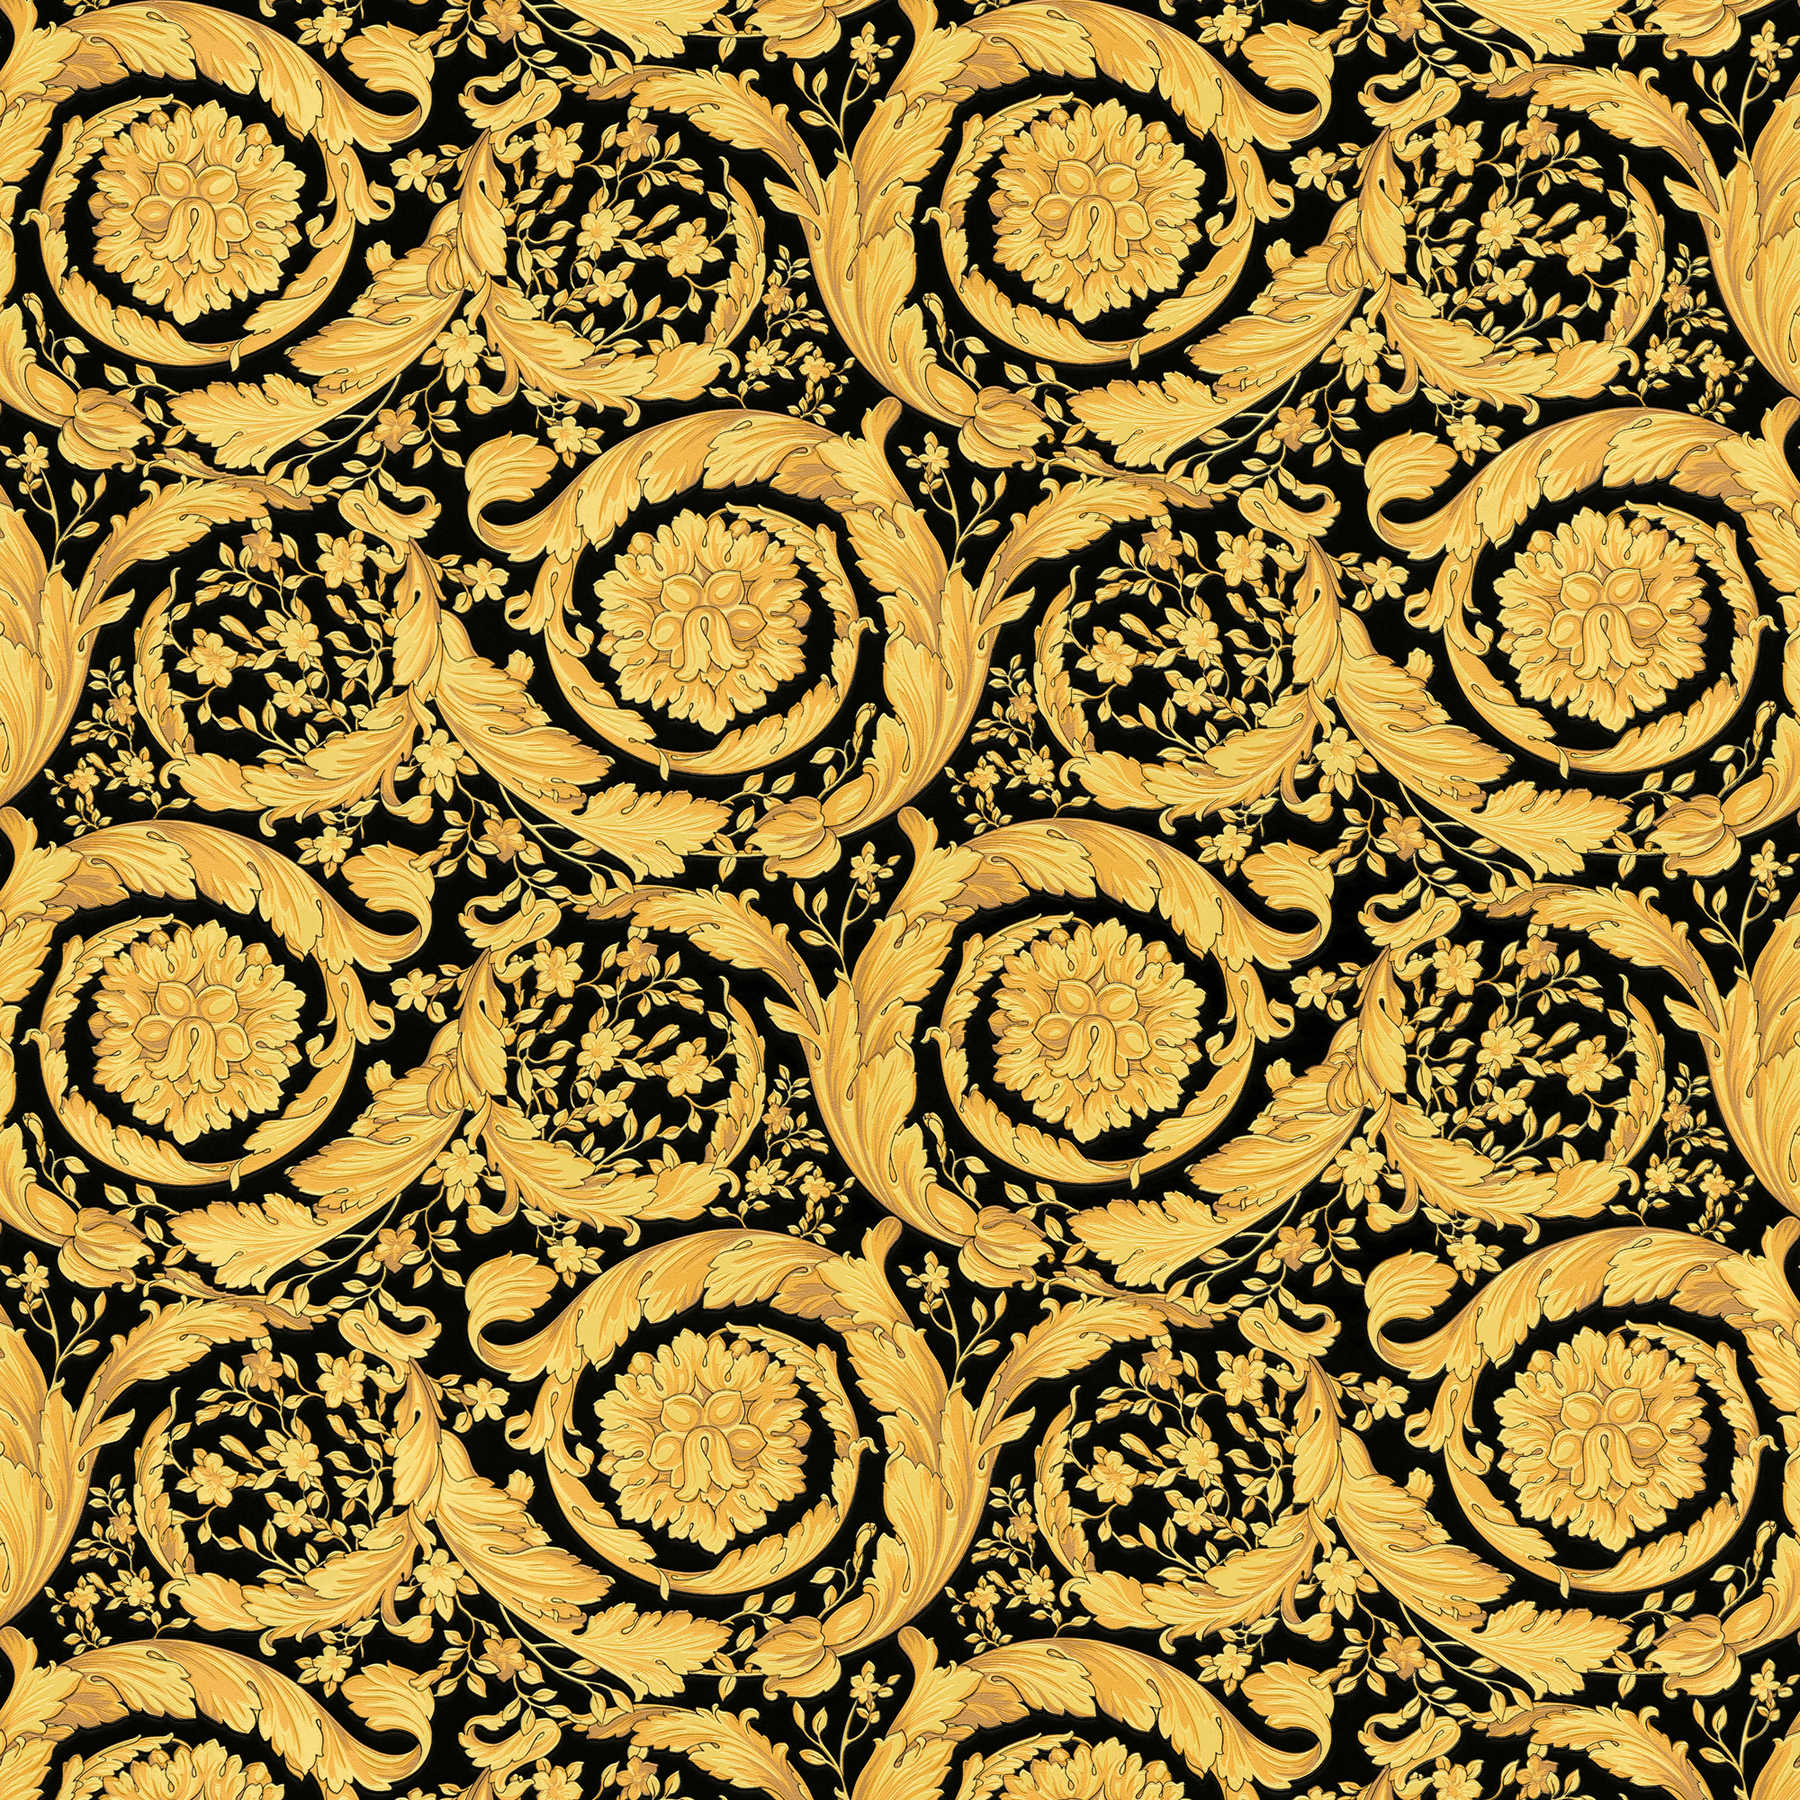 VERSACE behang met sierlijk bloemenpatroon - goud, zwart
